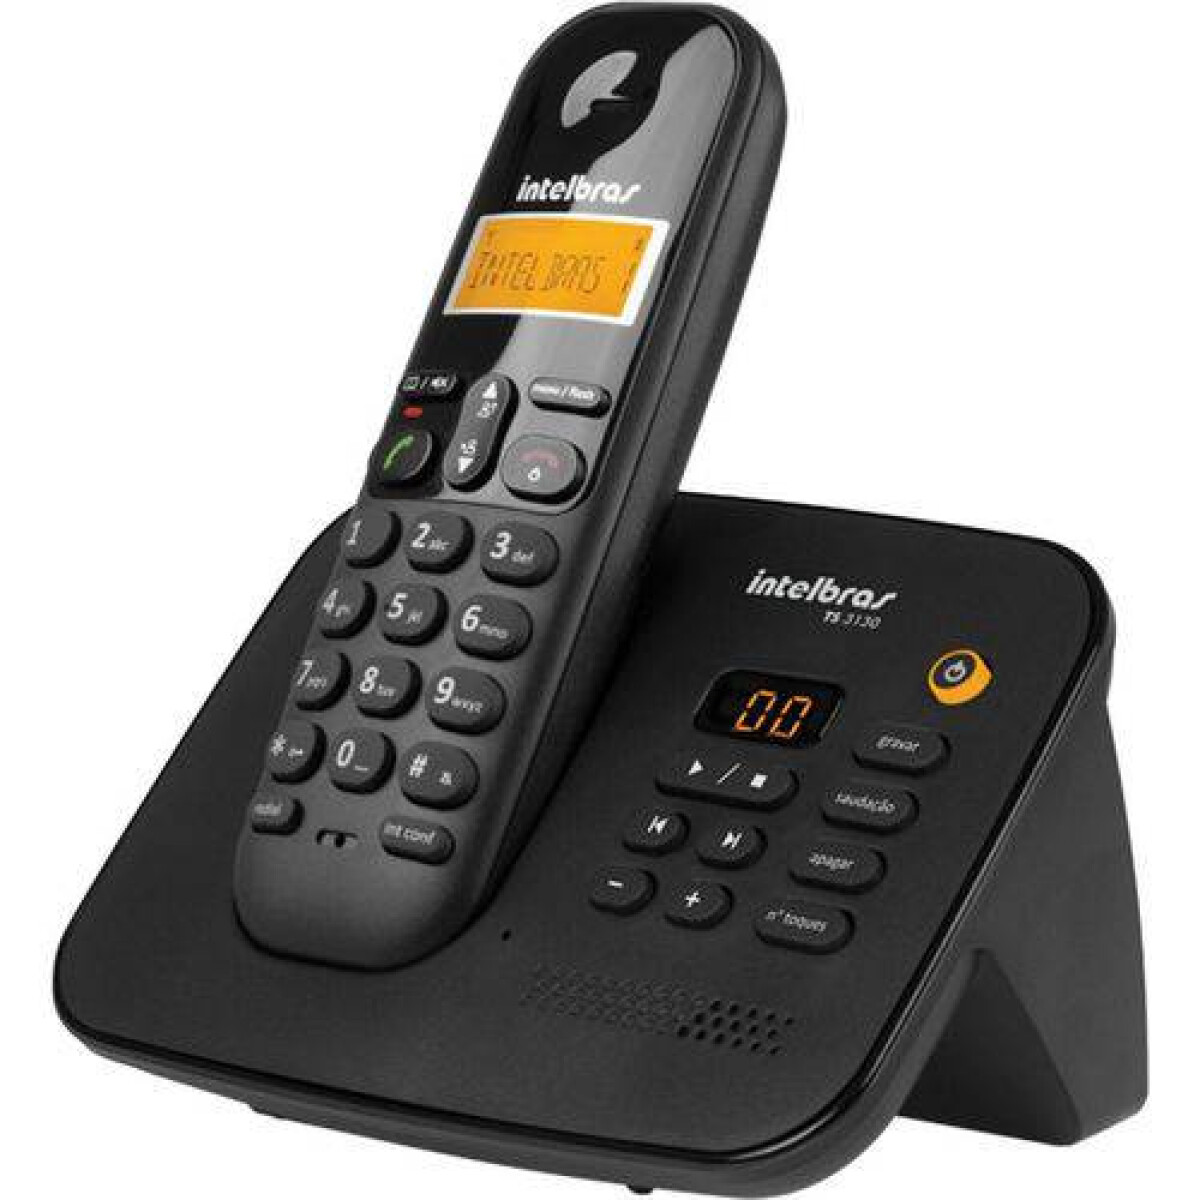 Teléfono Inalámbrico Intelbras Ts 3130 Negro - 3785 